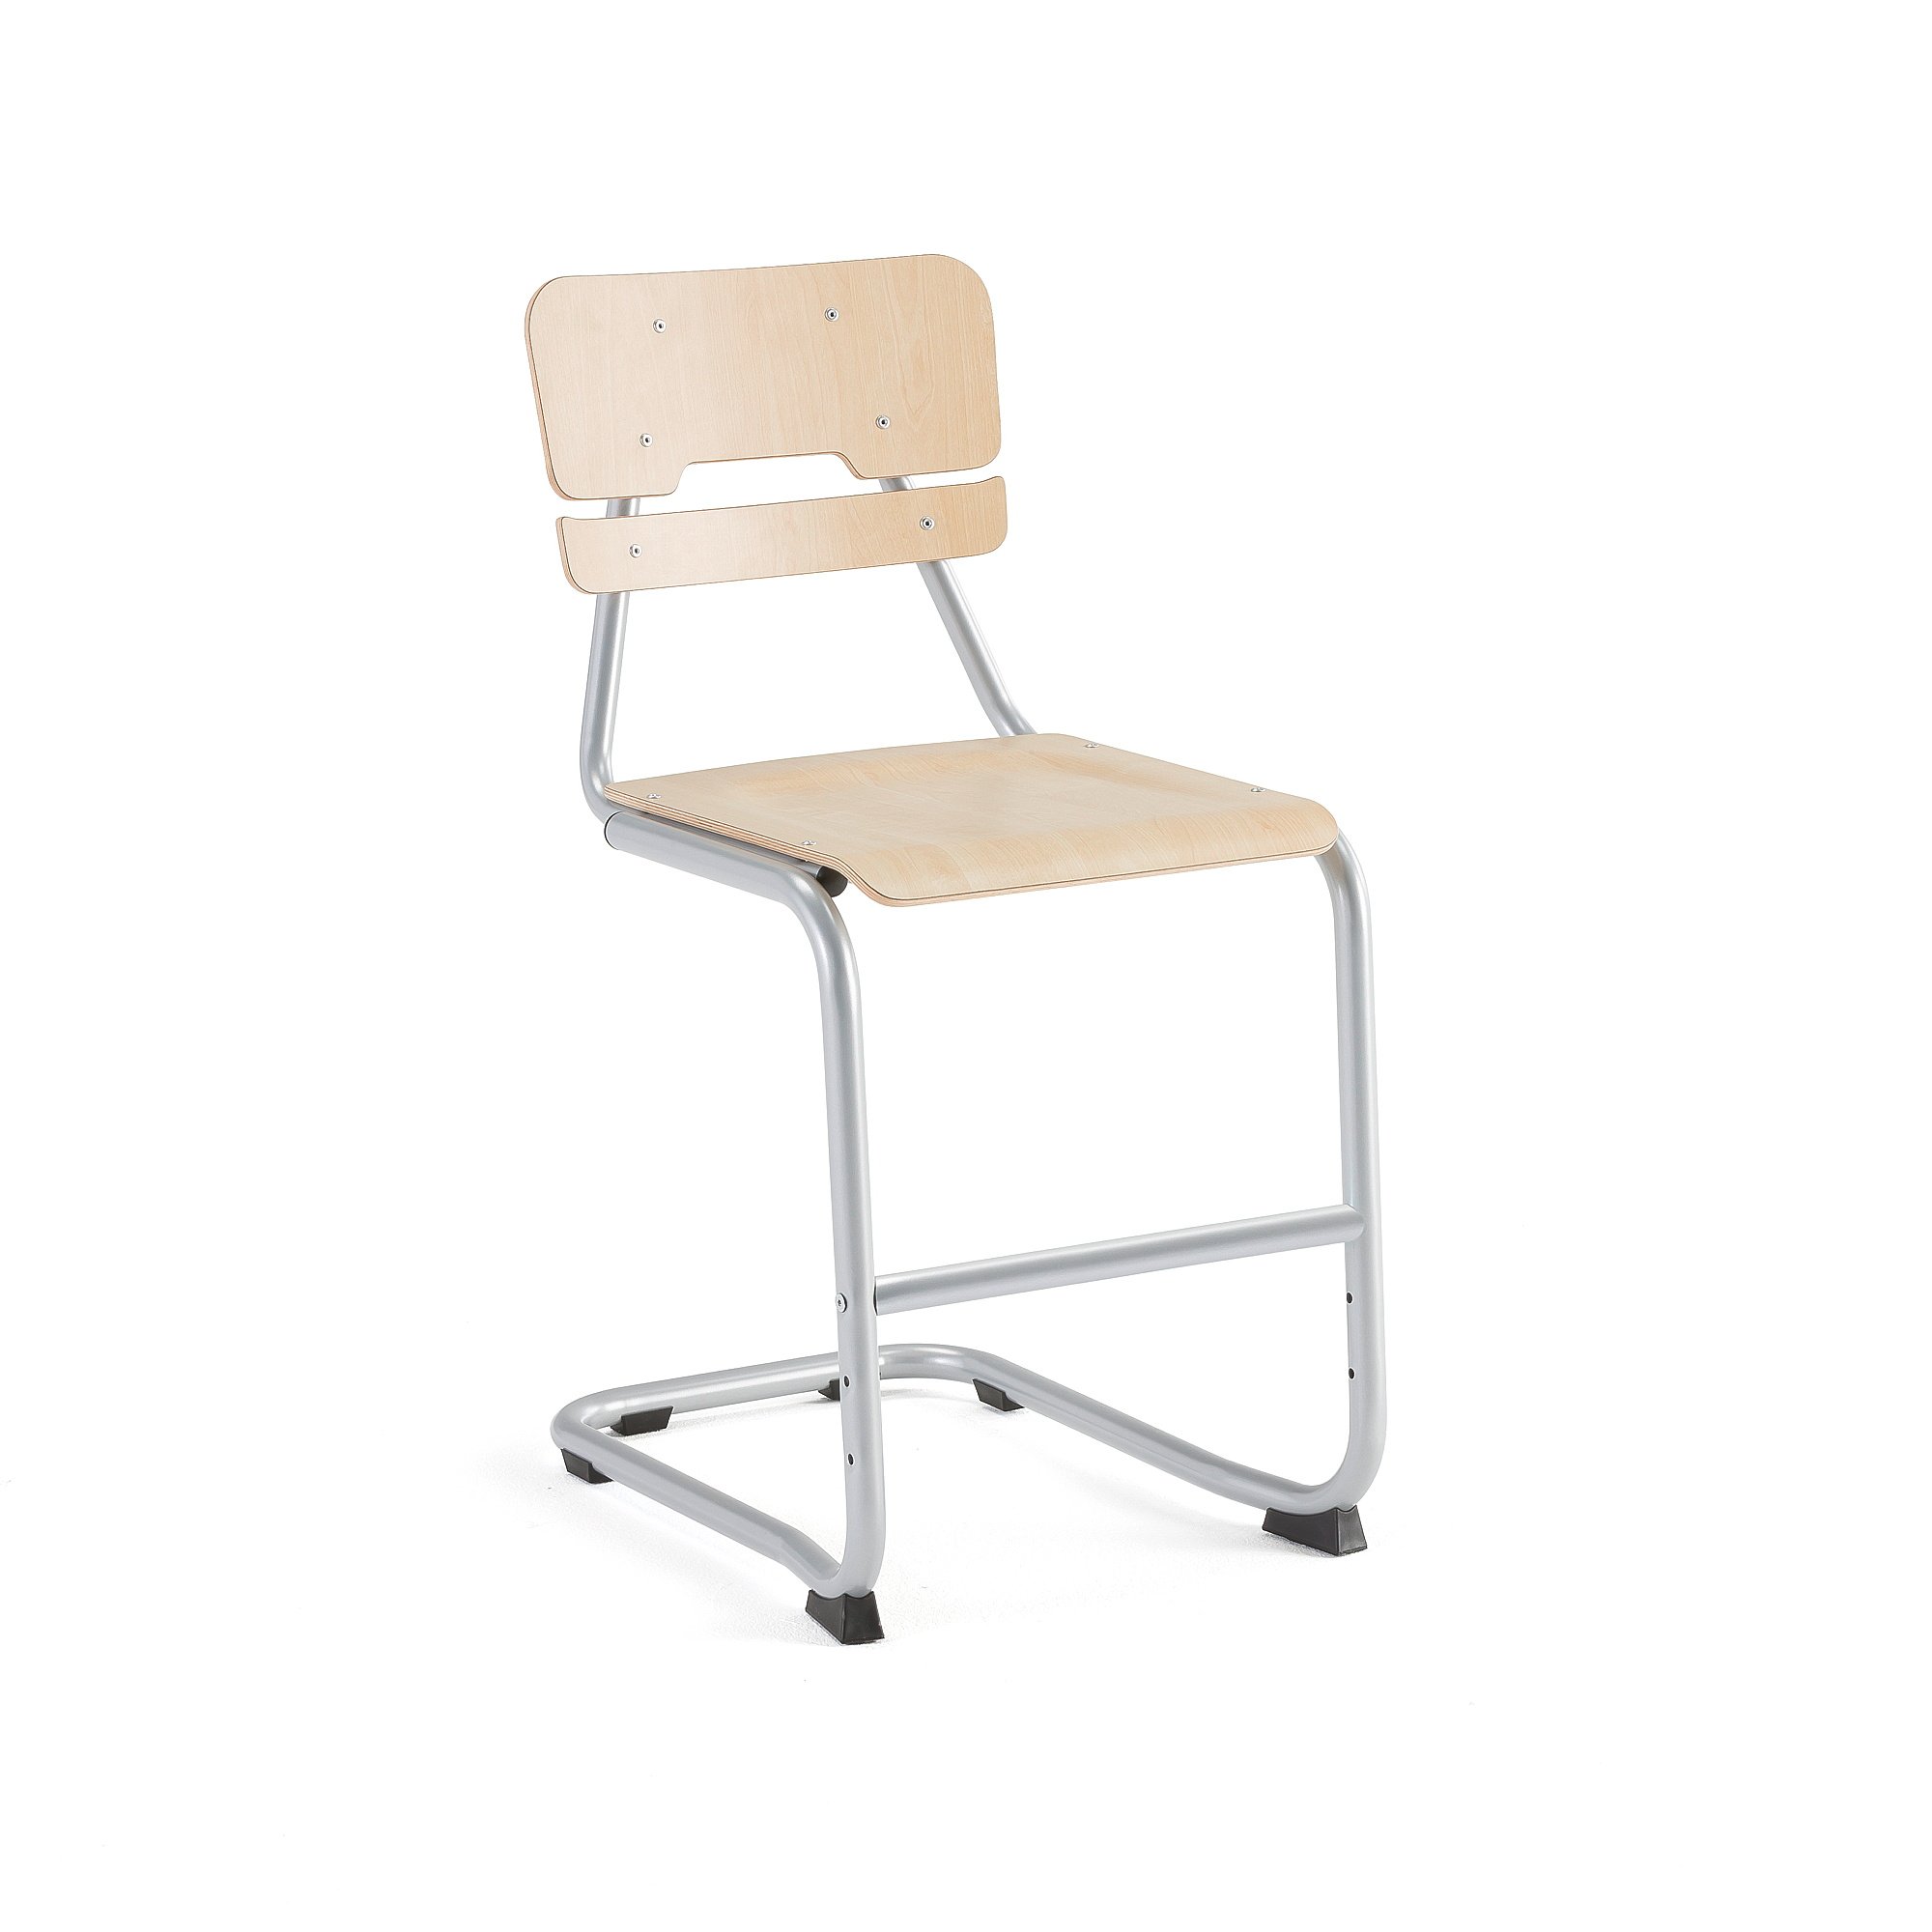 Školní židle LEGERE II, výška 500 mm, bříza